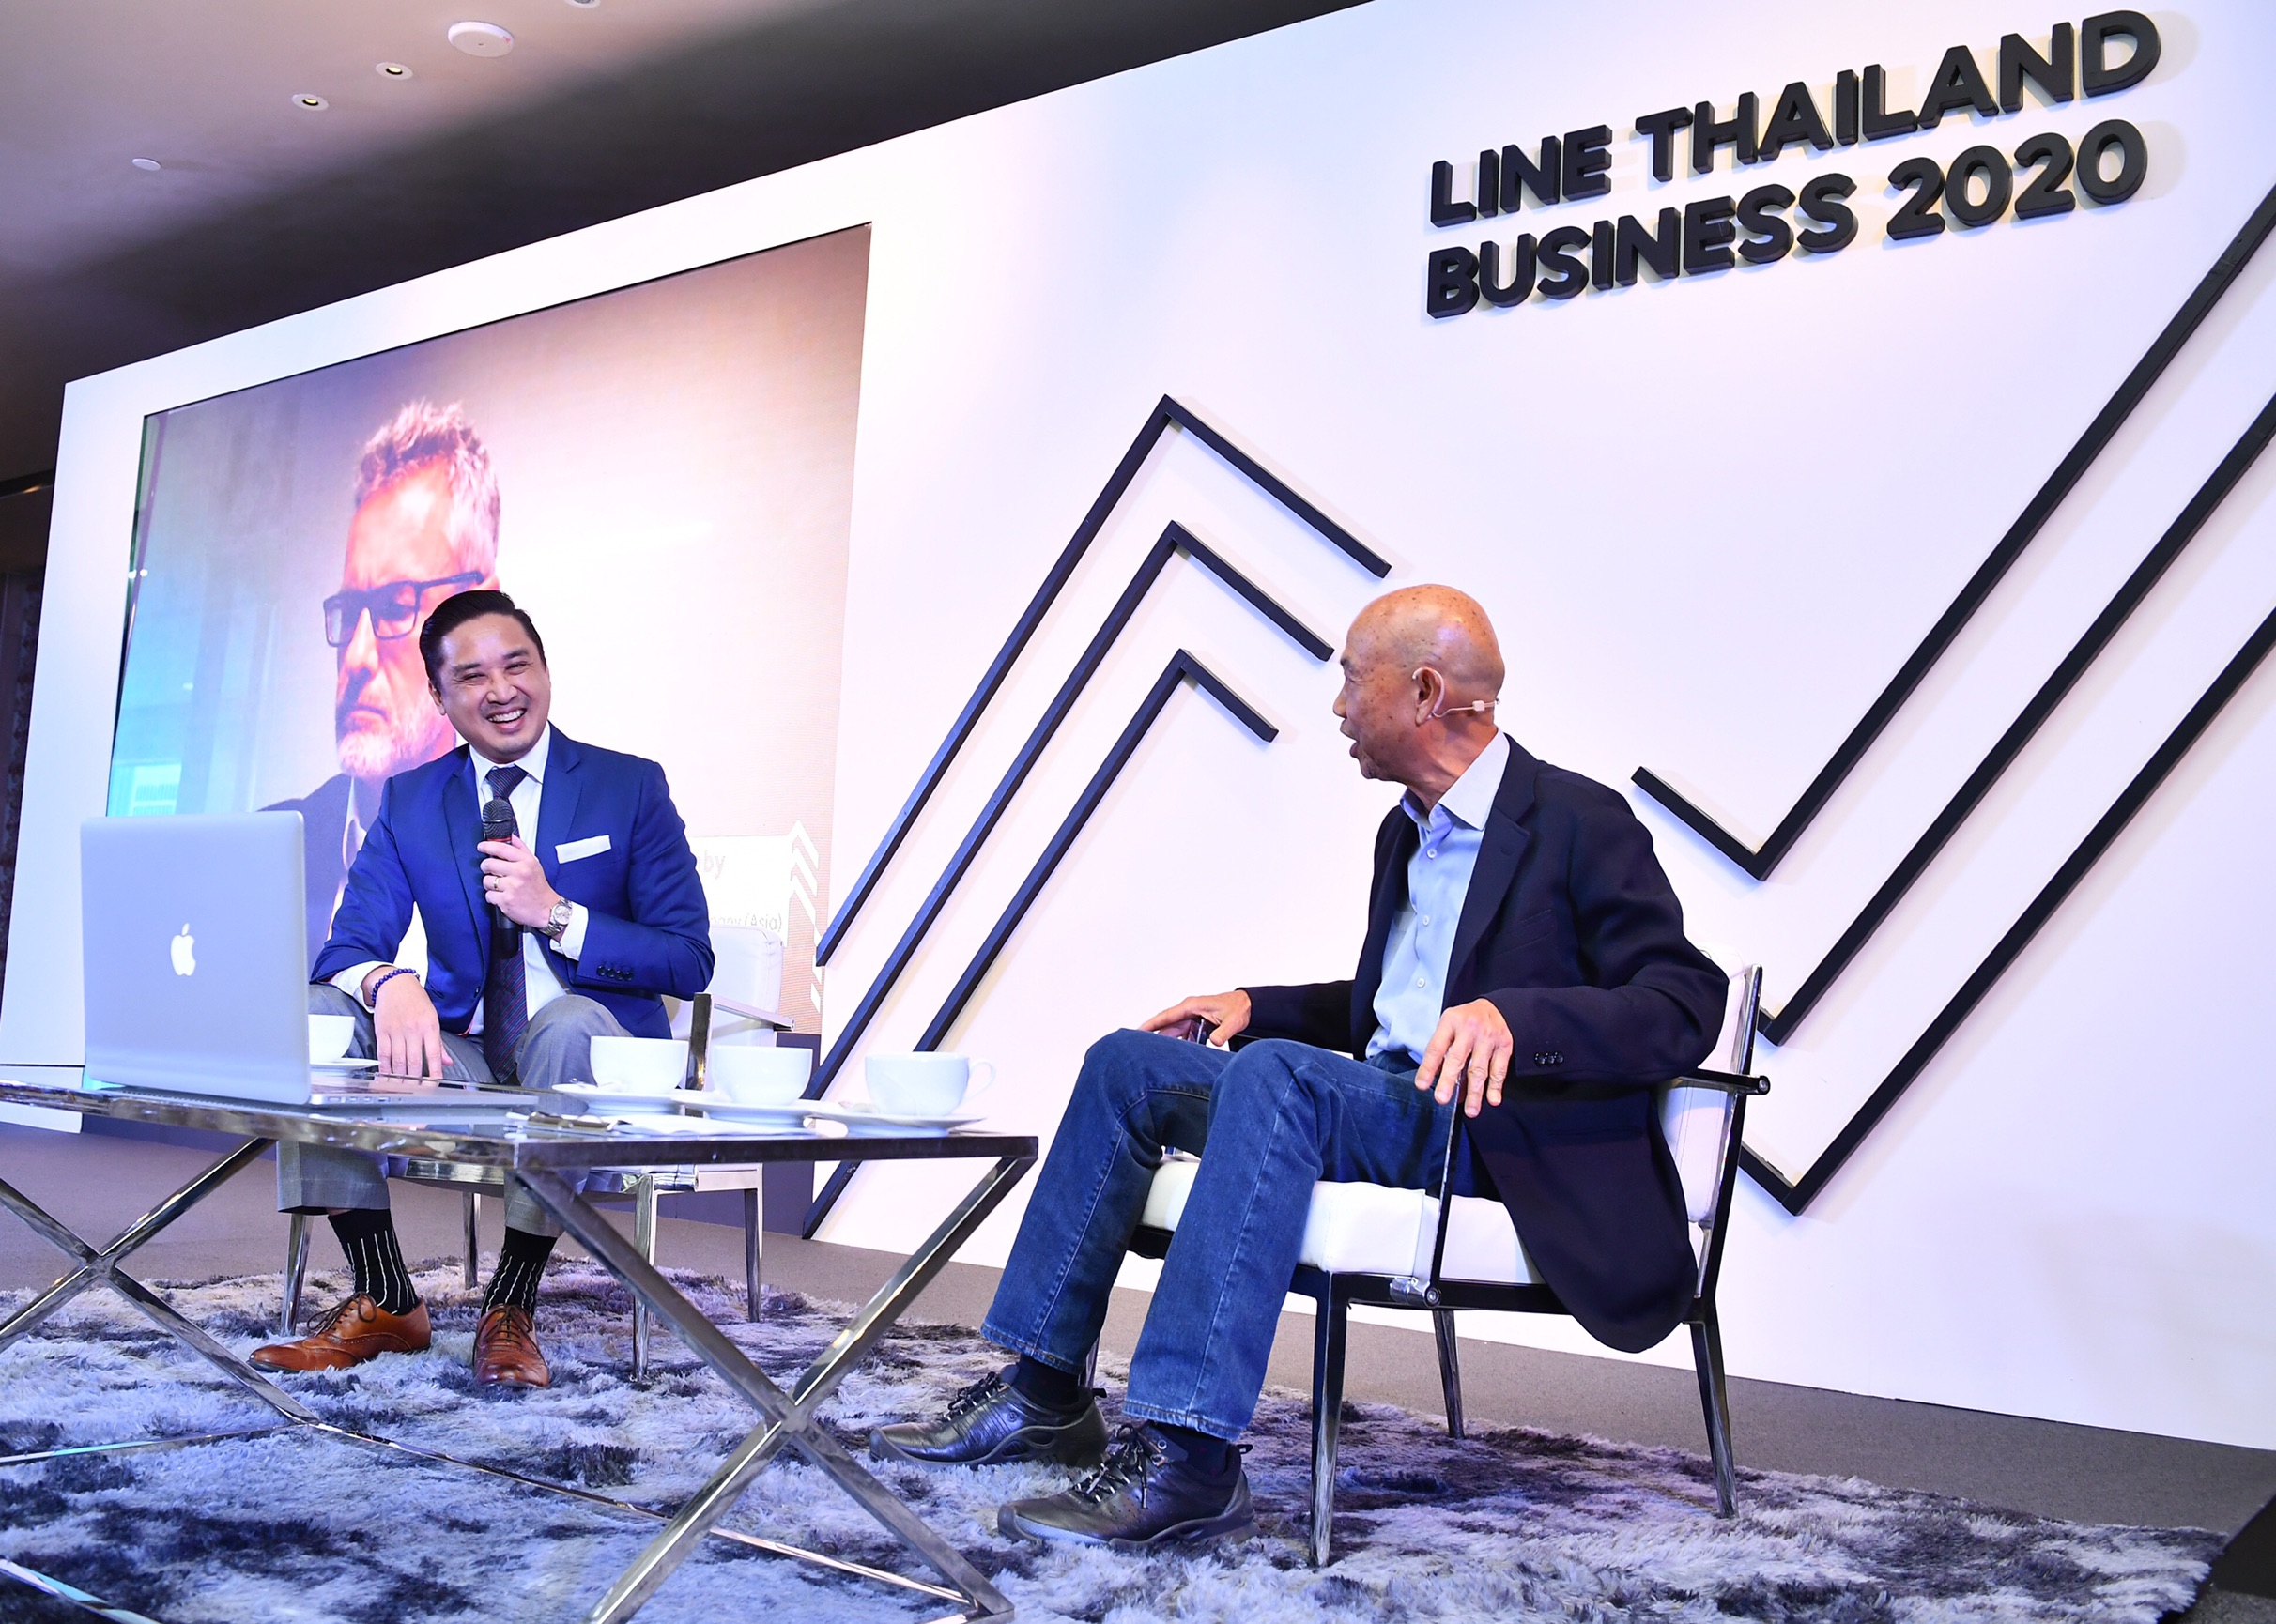 LINE ประเทศไทย จัดเสวนา CEO Talk ชูจุดแข็ง “เอเชีย” สู่ศูนย์กลางการขับเคลื่อนการเติบโตของโลกหลังวิกฤติ พร้อมแนะธุรกิจไทยเร่งคว้าโอกาสด้วยเทคโนโลยี